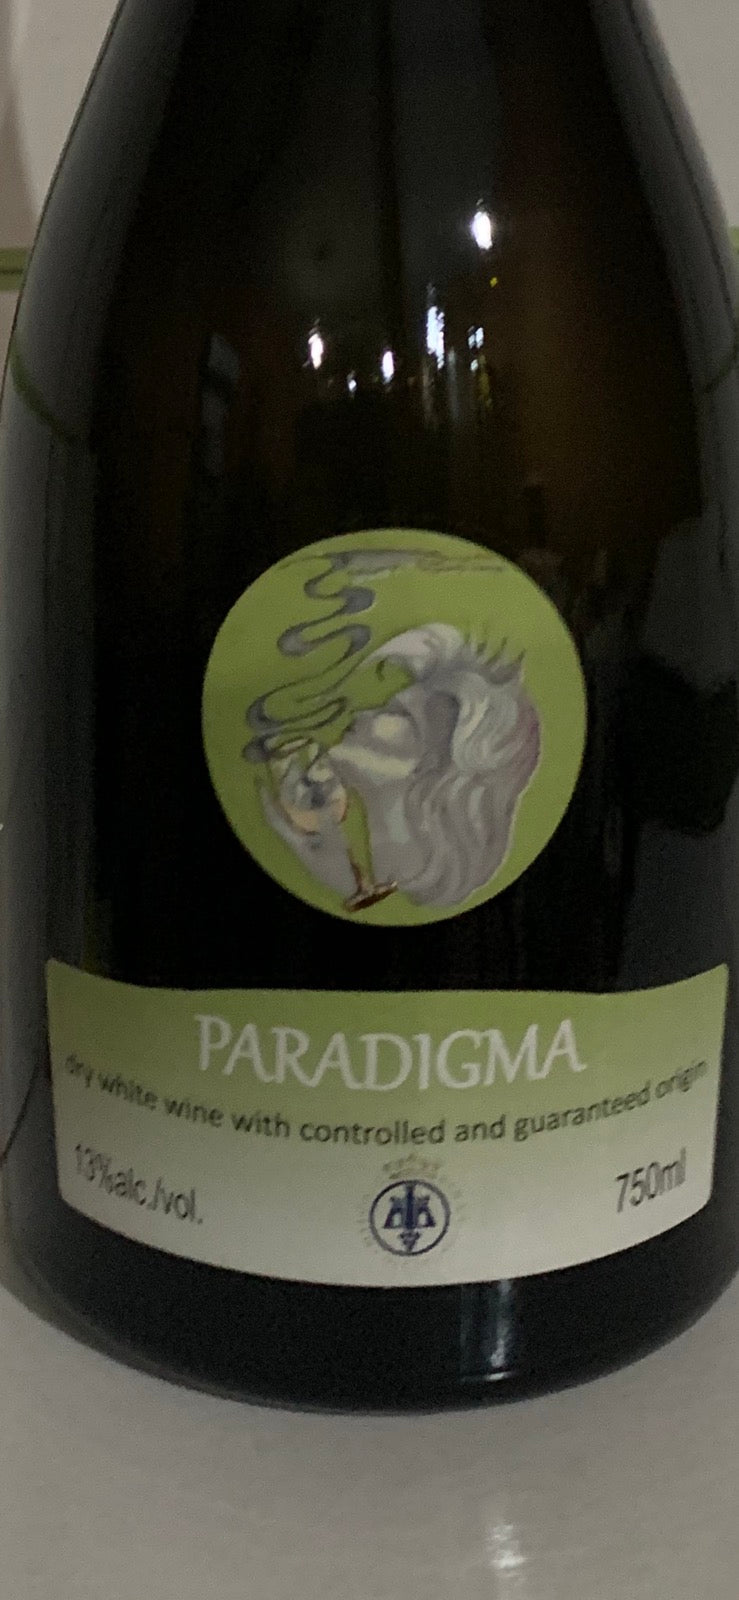 Paradigma - GrapeVine Nordic AB